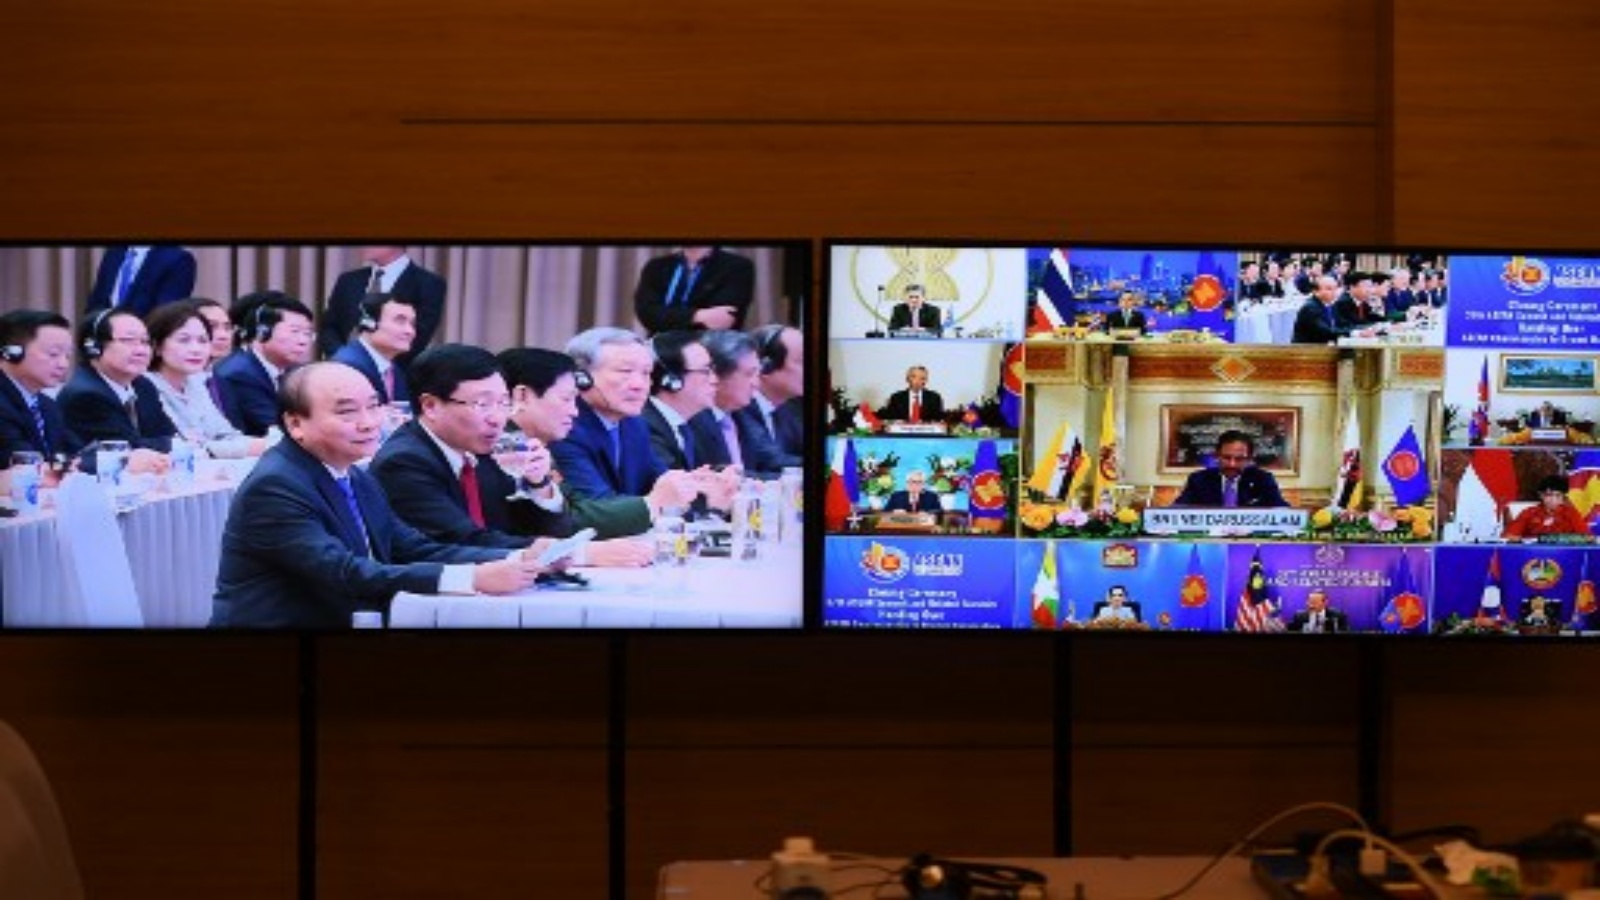 رئيس الوزراء الفيتنامي نجوين شوان فوك ينظر إلى قمة رابطة دول جنوب شرق آسيا (آسيان) التي تستضيف قمة بروناي سلطان حسن البلقية (الثاني إلى اليمين) ، كما يظهر على شاشات التلفزيون ، وهي تخاطب حفل اختتام رابطة دول جنوب شرق آسيا في هانوي في 15 نوفمبر 2020.